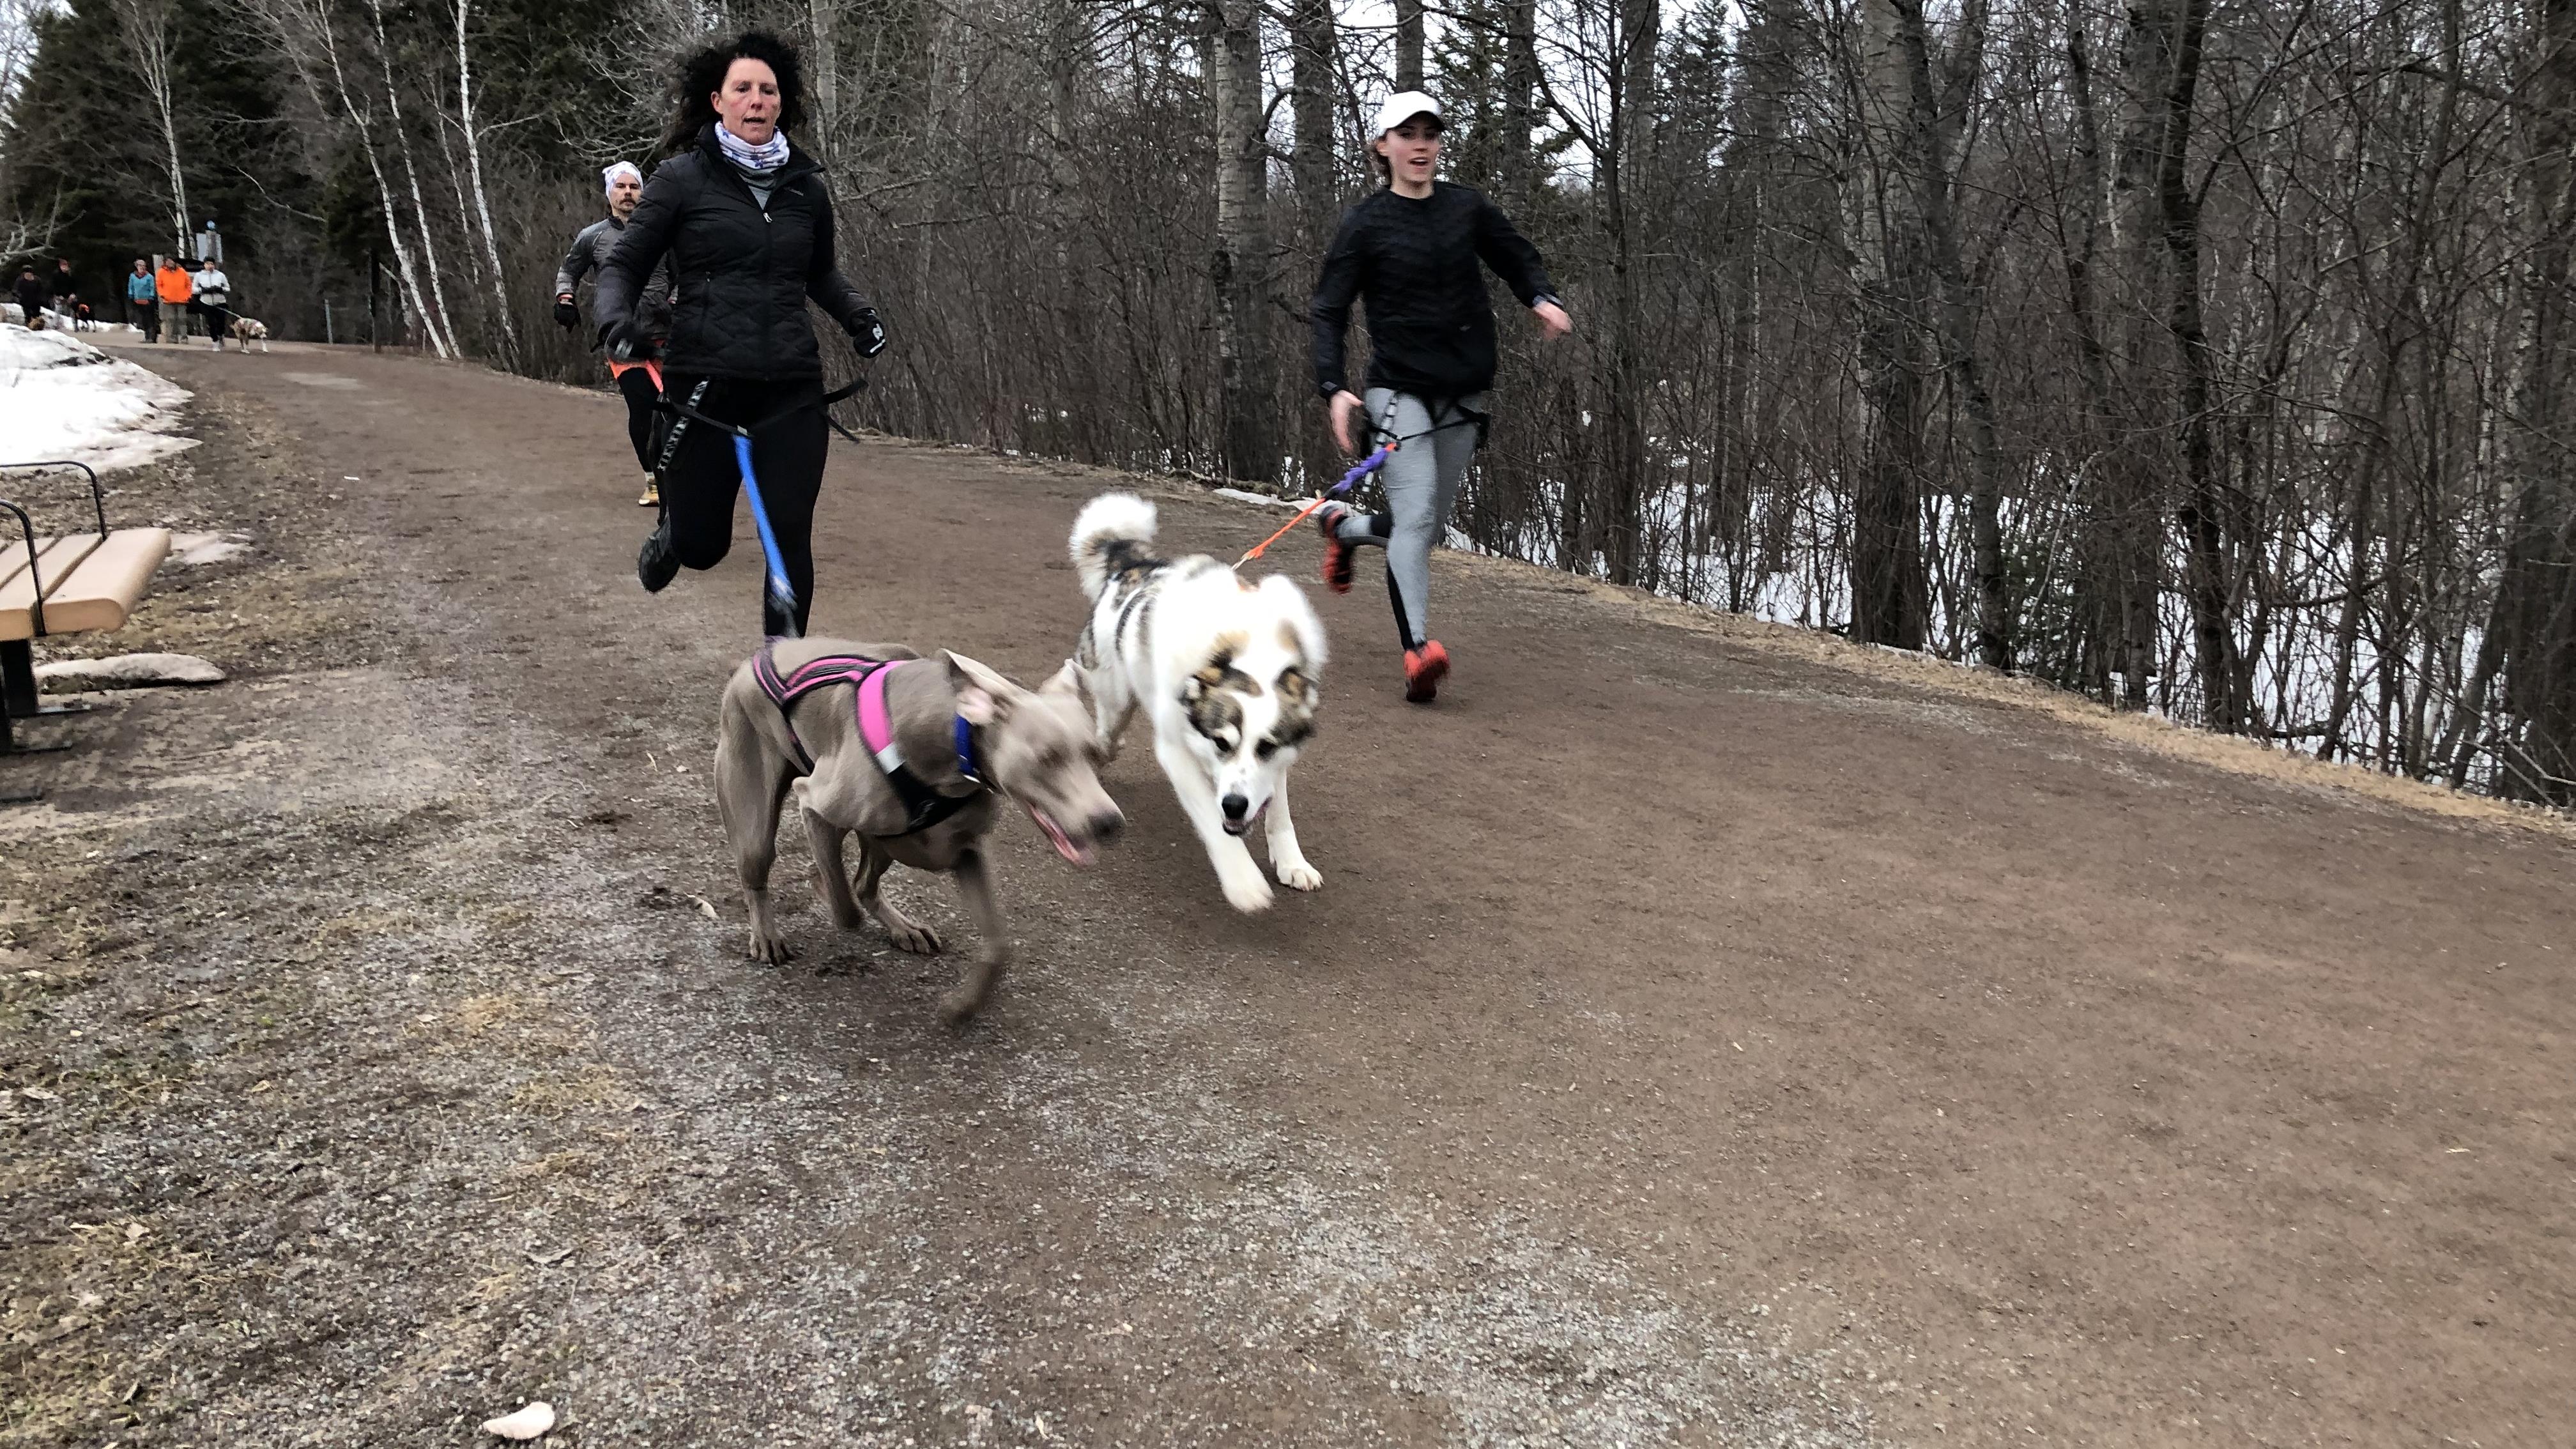 Canicross : partager sa passion pour la course à pied avec son chien
Canicross : partager sa passion pour la course à pied avec son chien